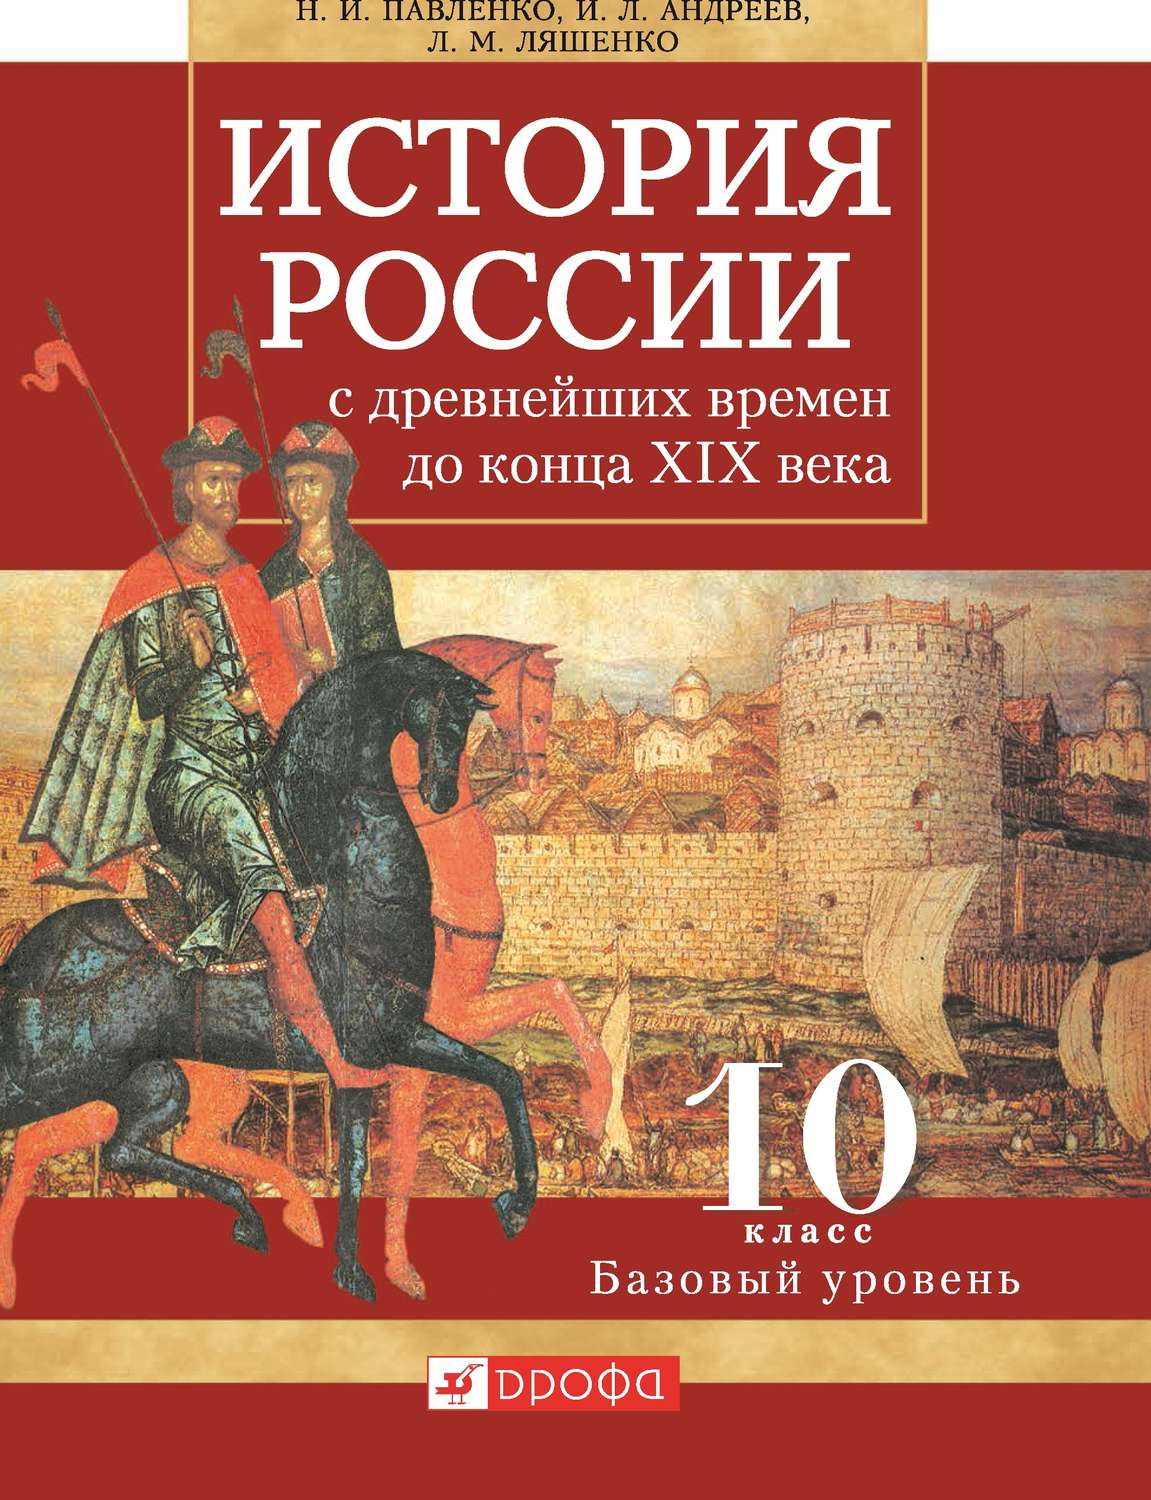 Книга история россии 10 класс скачать бесплатно